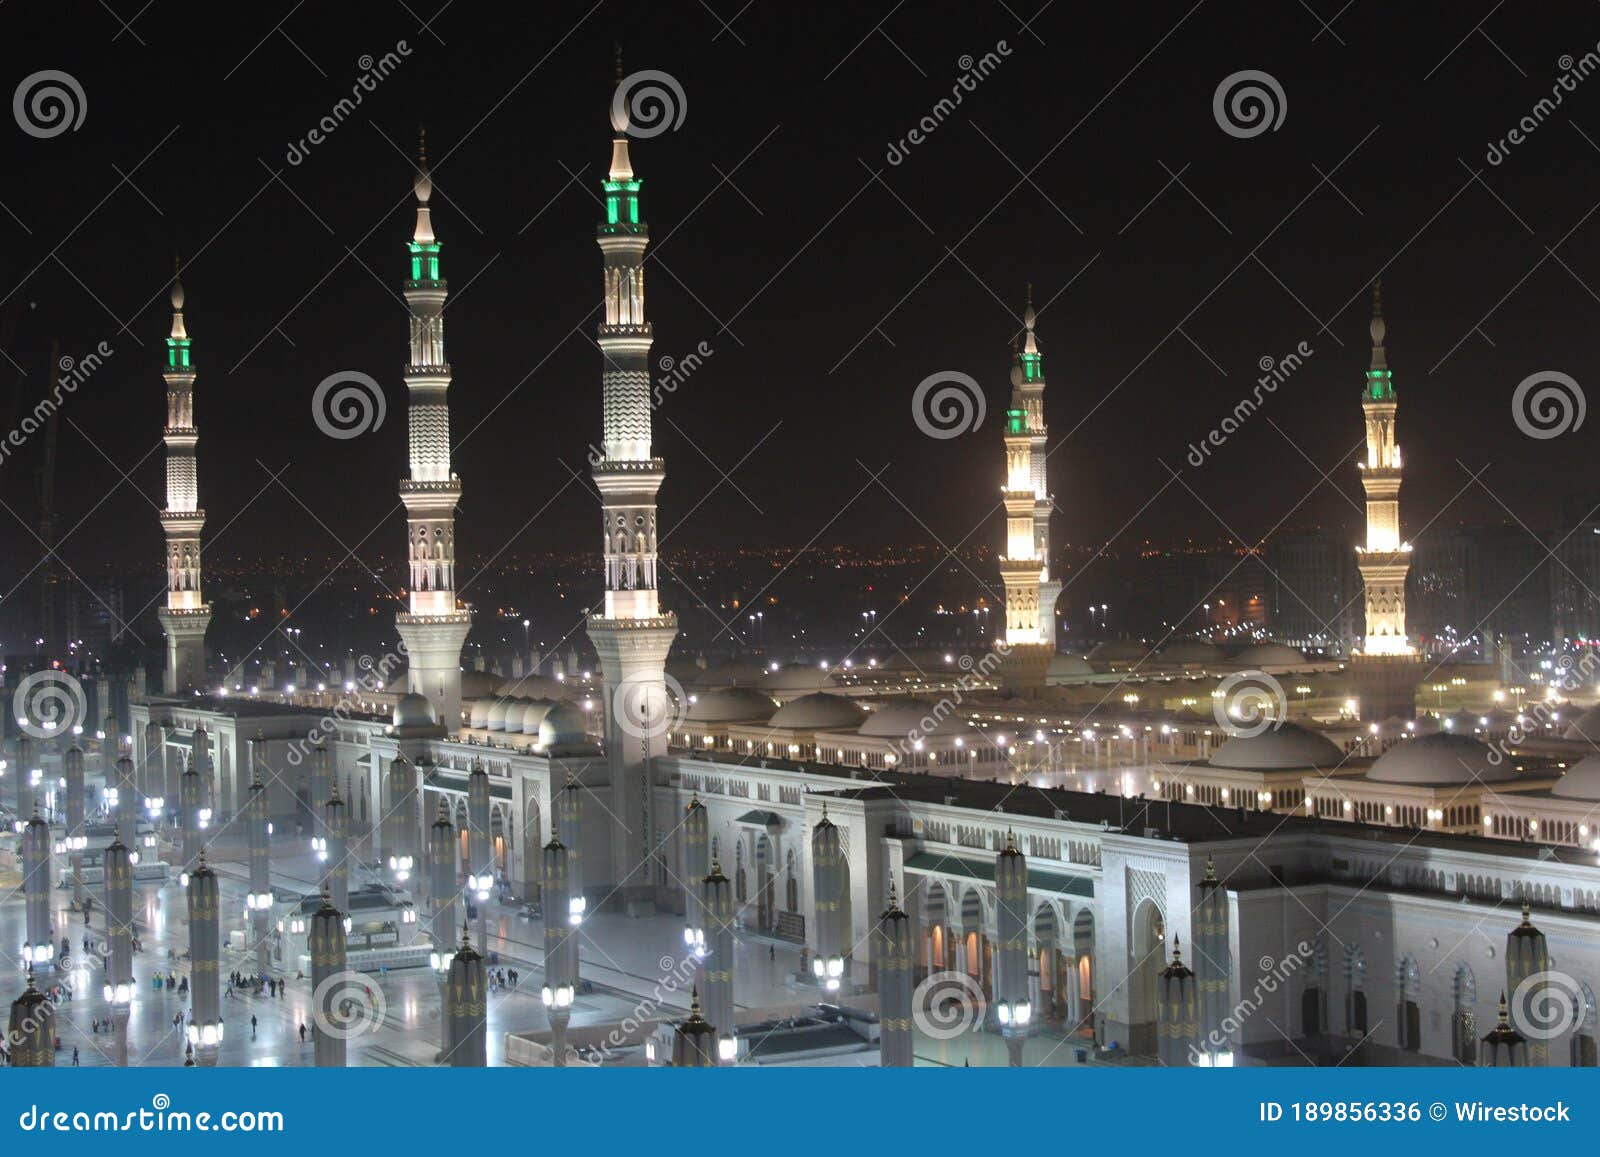 moon between two towers of the prophet's mosque in al madinah, saudi arabia